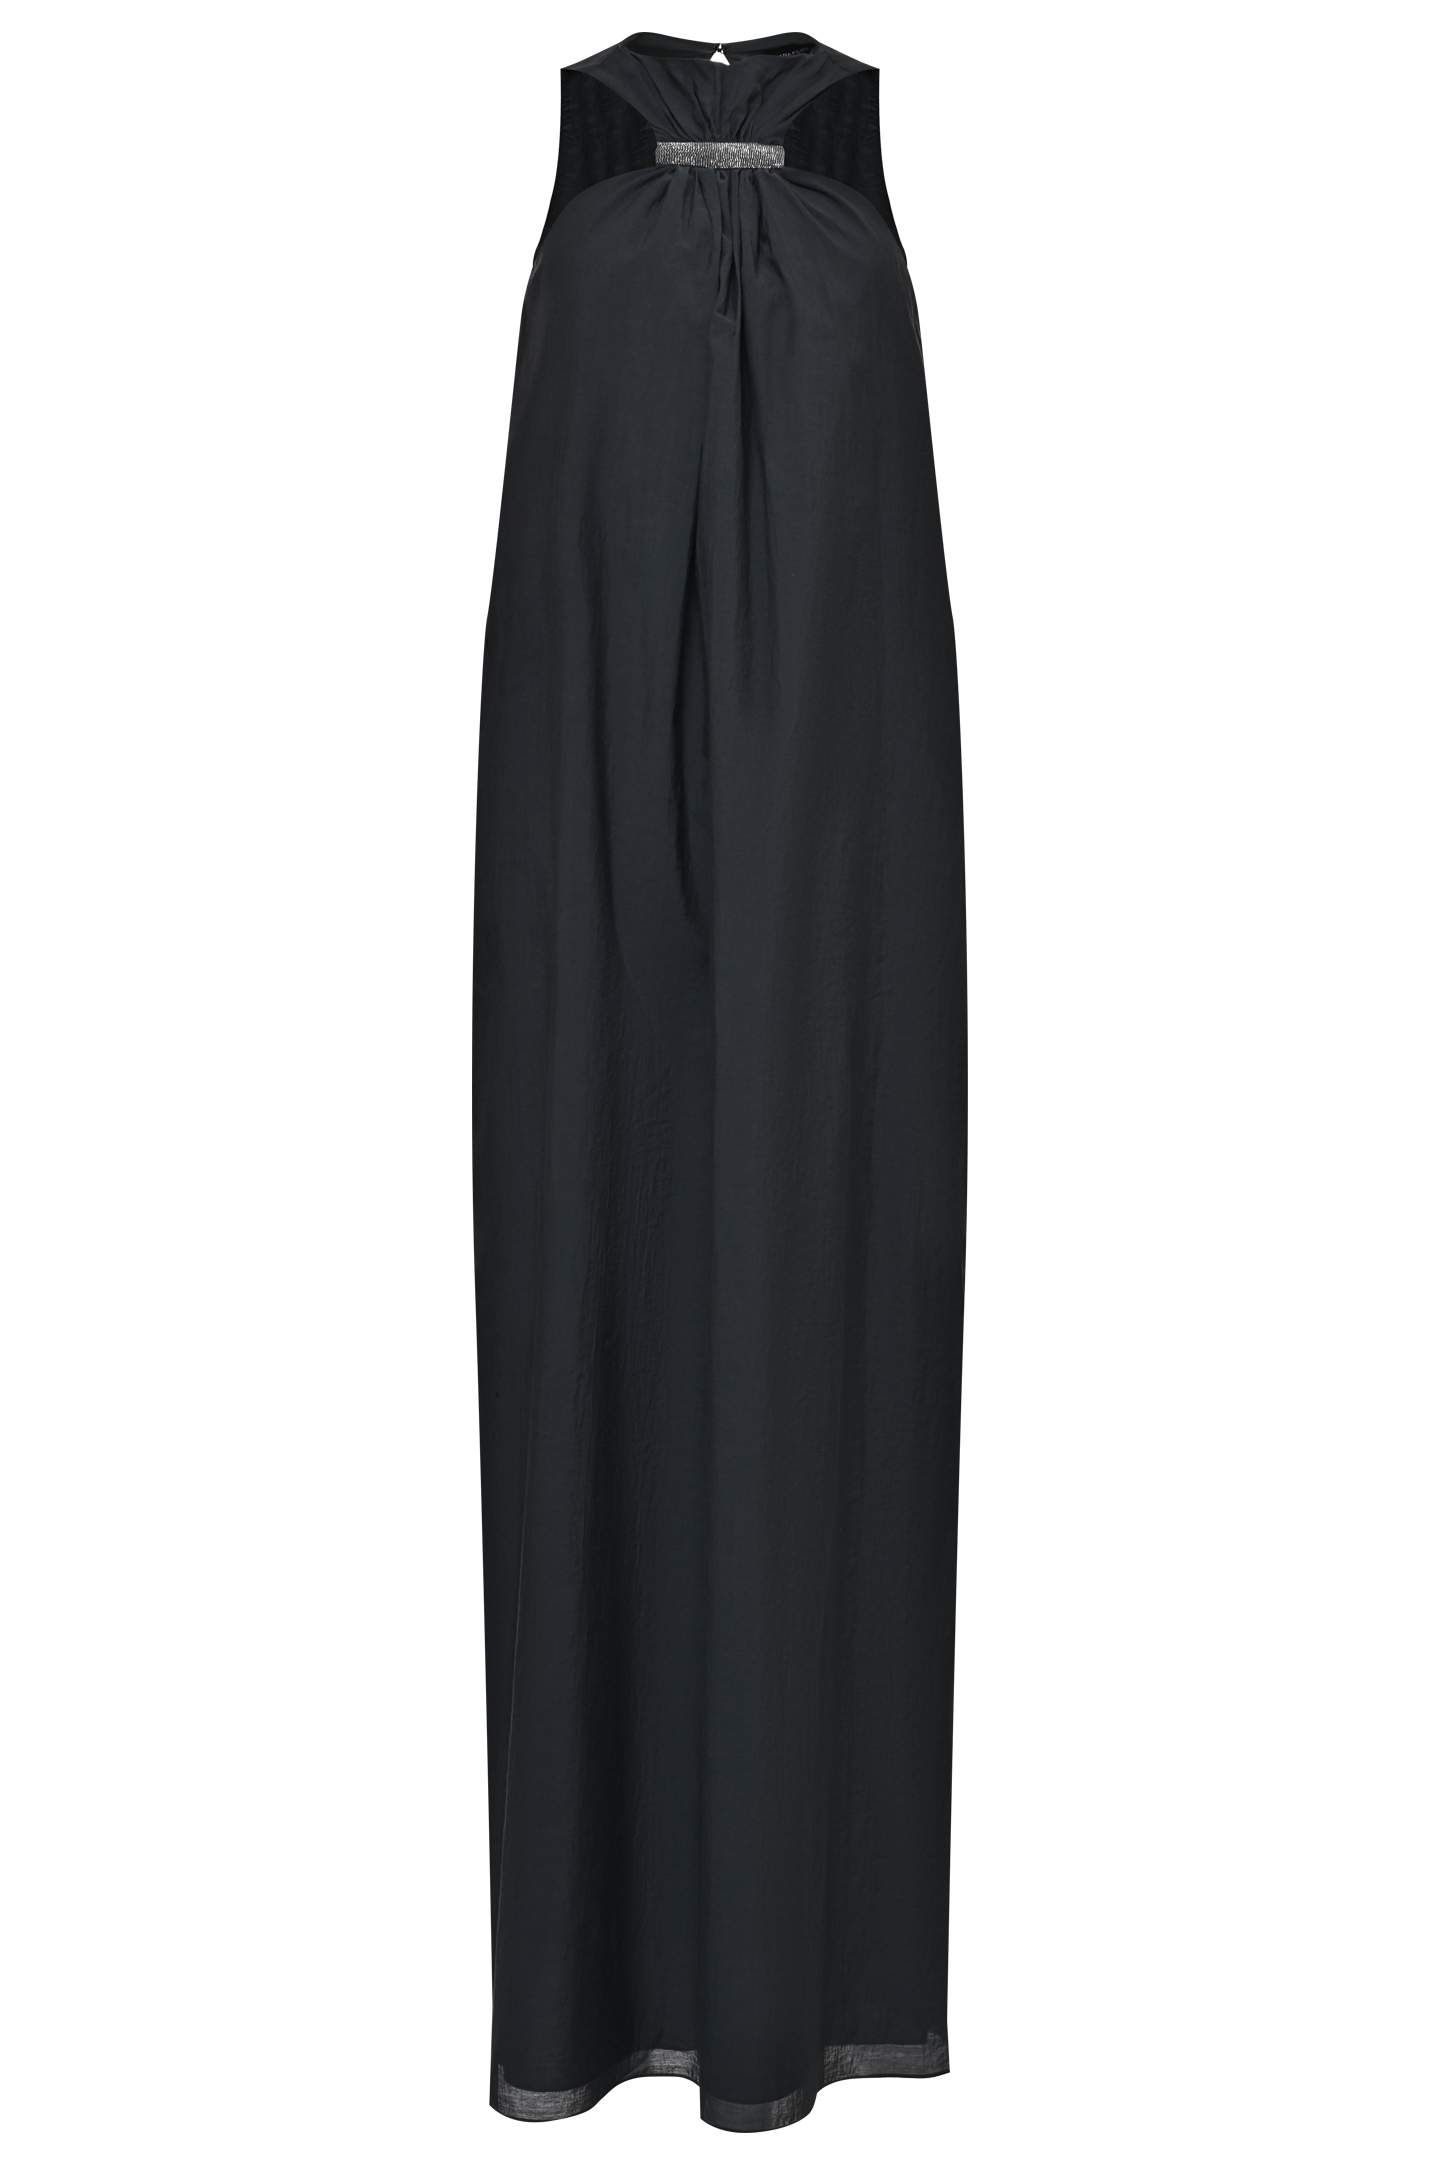 Платье FABIANA FILIPPI ABD273B590I813, цвет: Серый, Женский